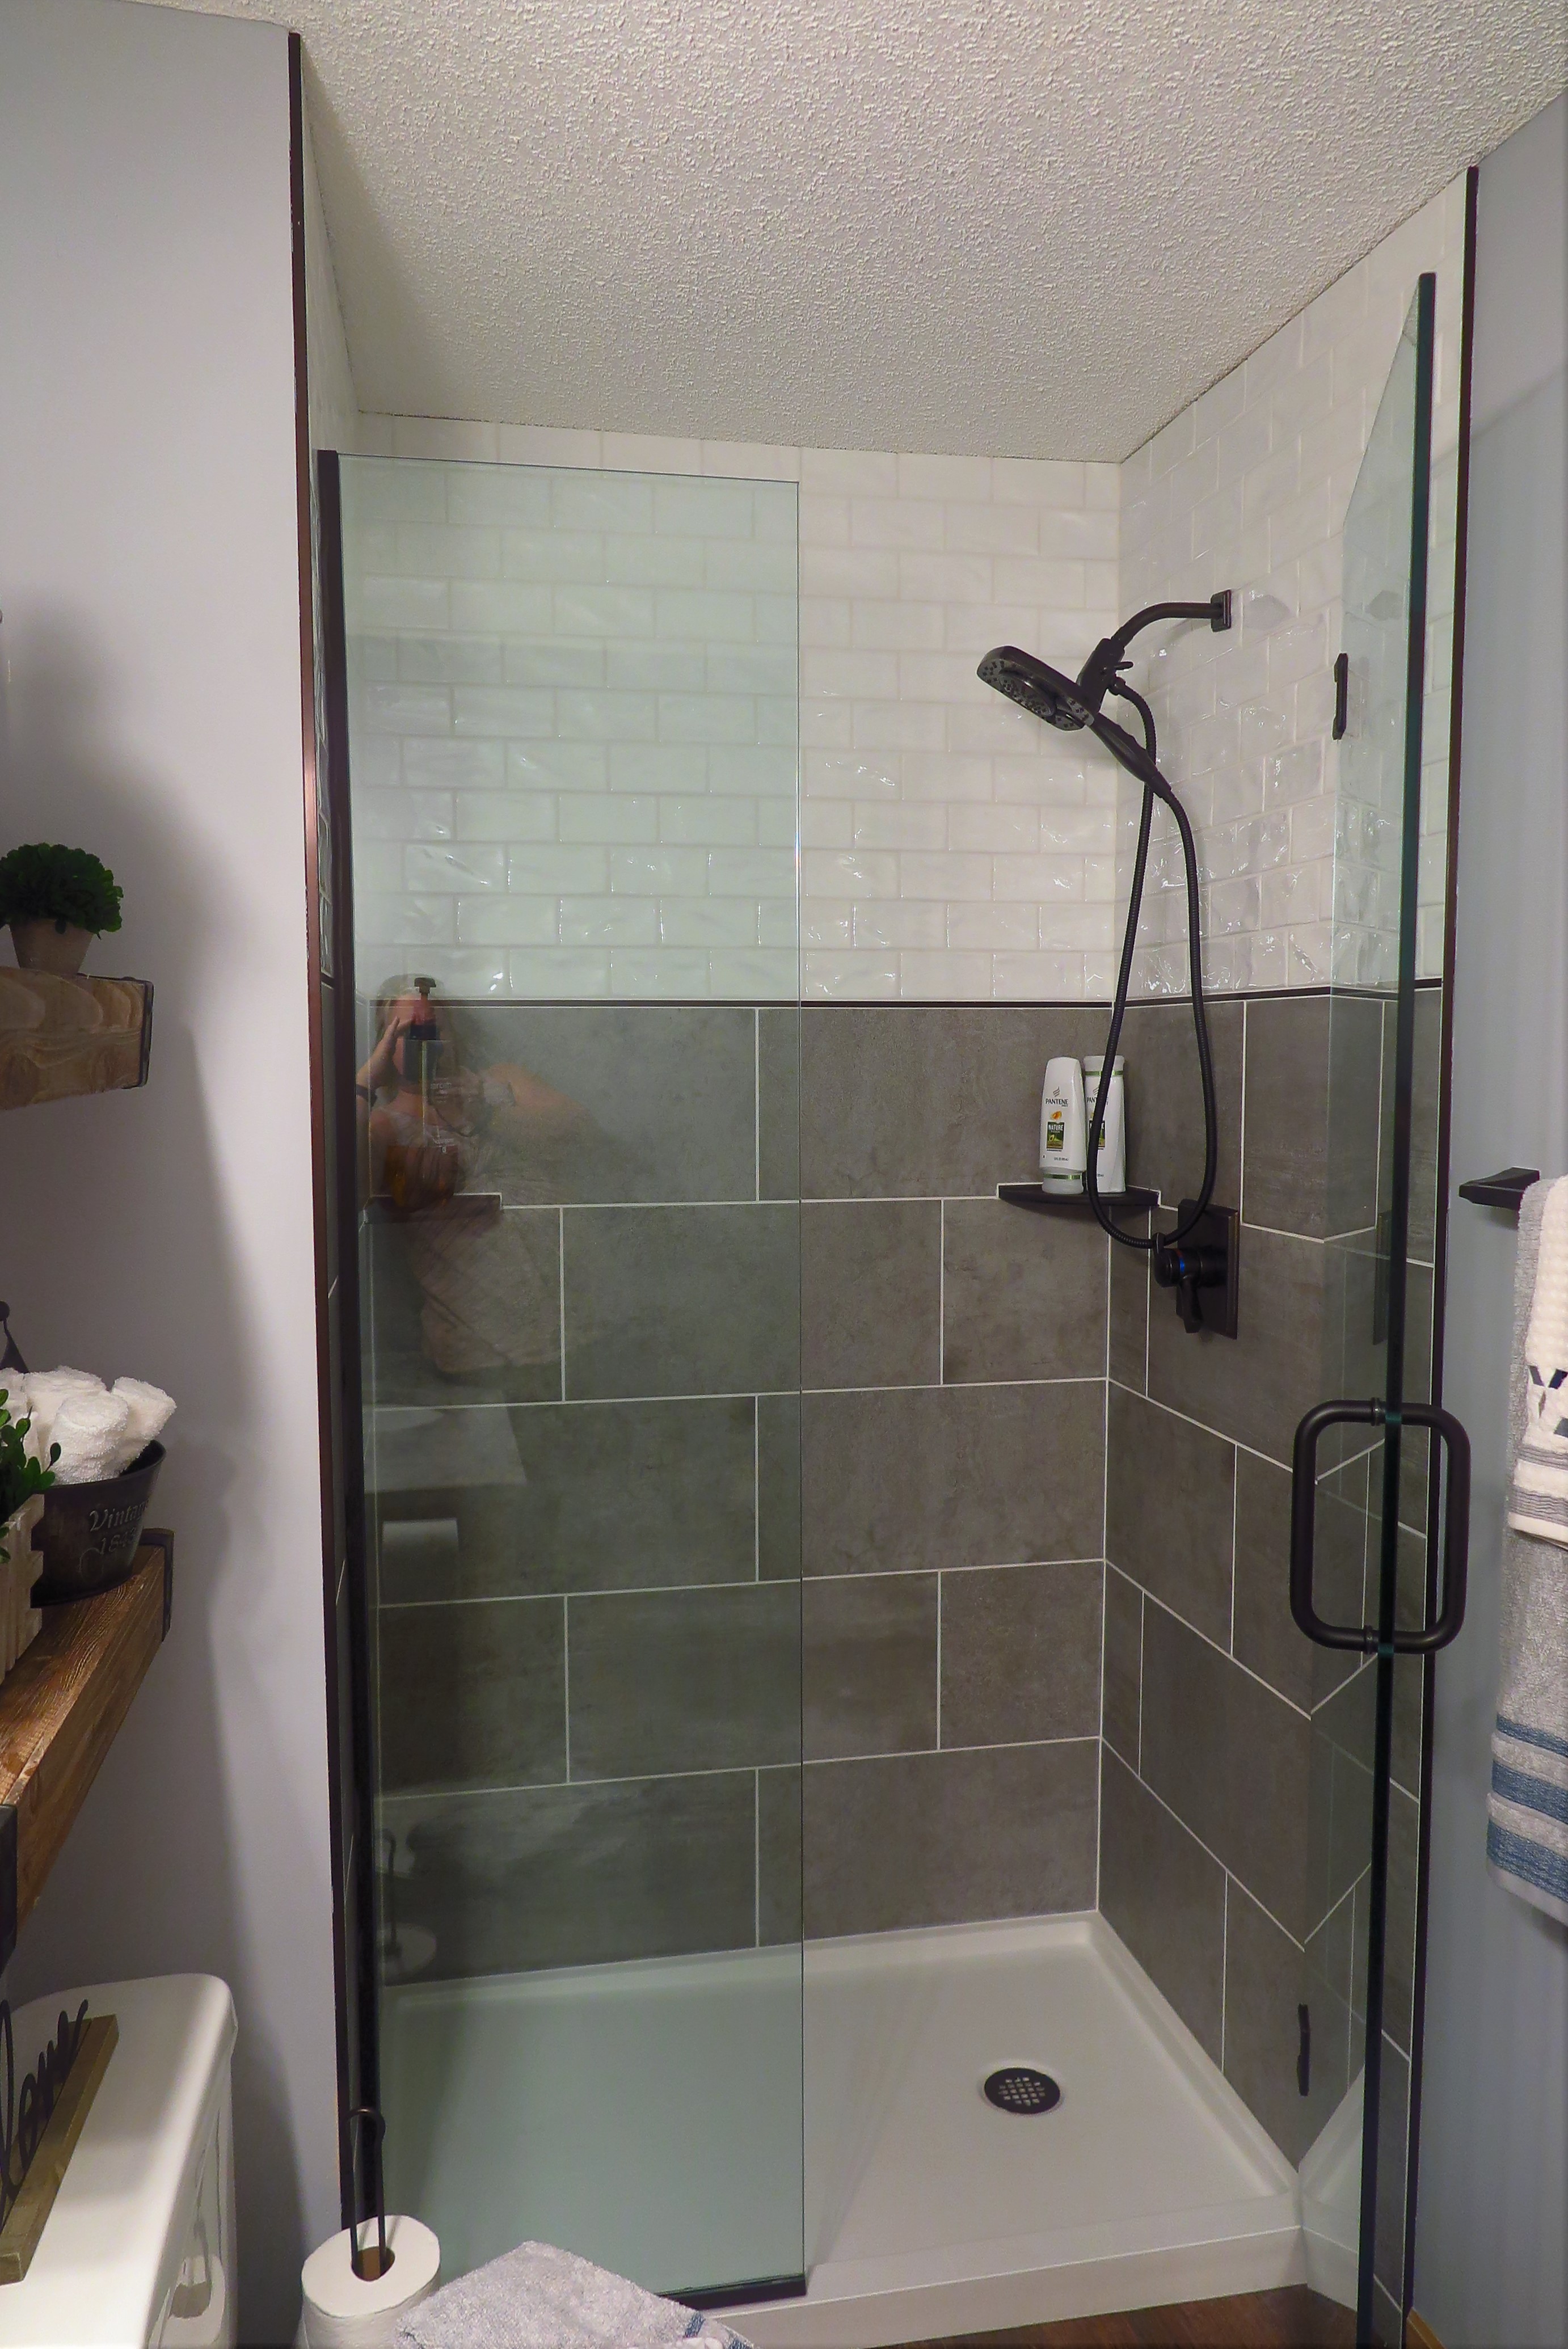 Lakeville Bathroom Remodel - After Photo